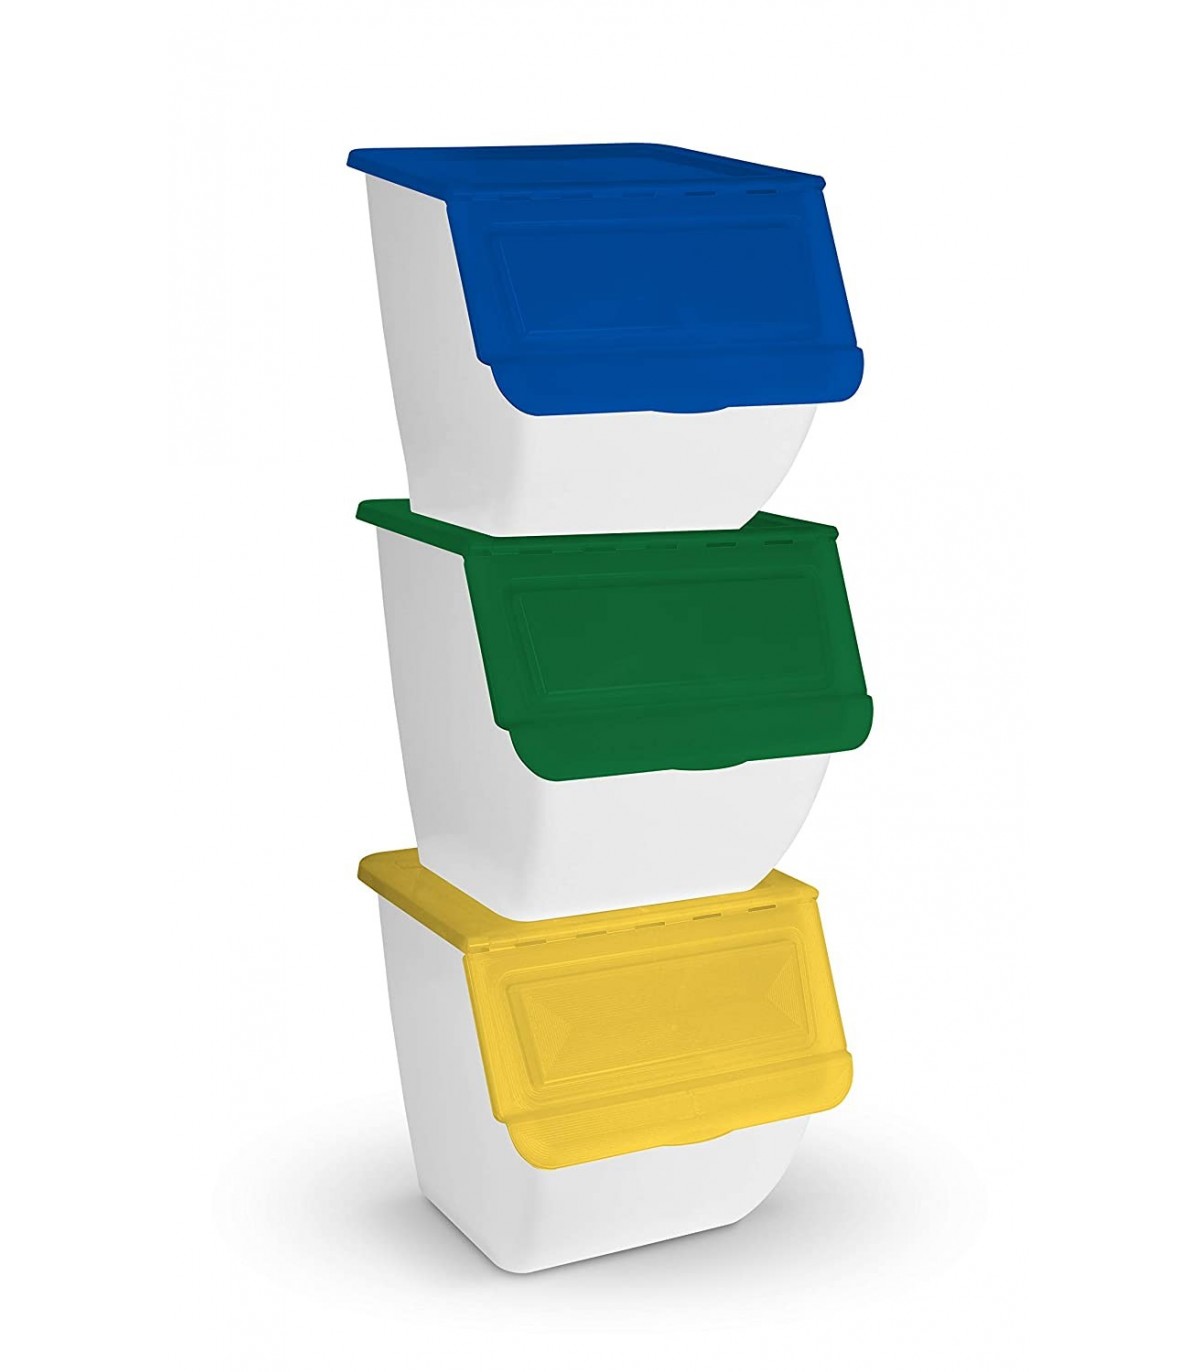 TIENDA EURASIA® Cubo de Basura para la Cocina - Cubo Basura con Pedal  Capacidad para 30 Litros - Material Plastico Resistente - Variedad de  Colores